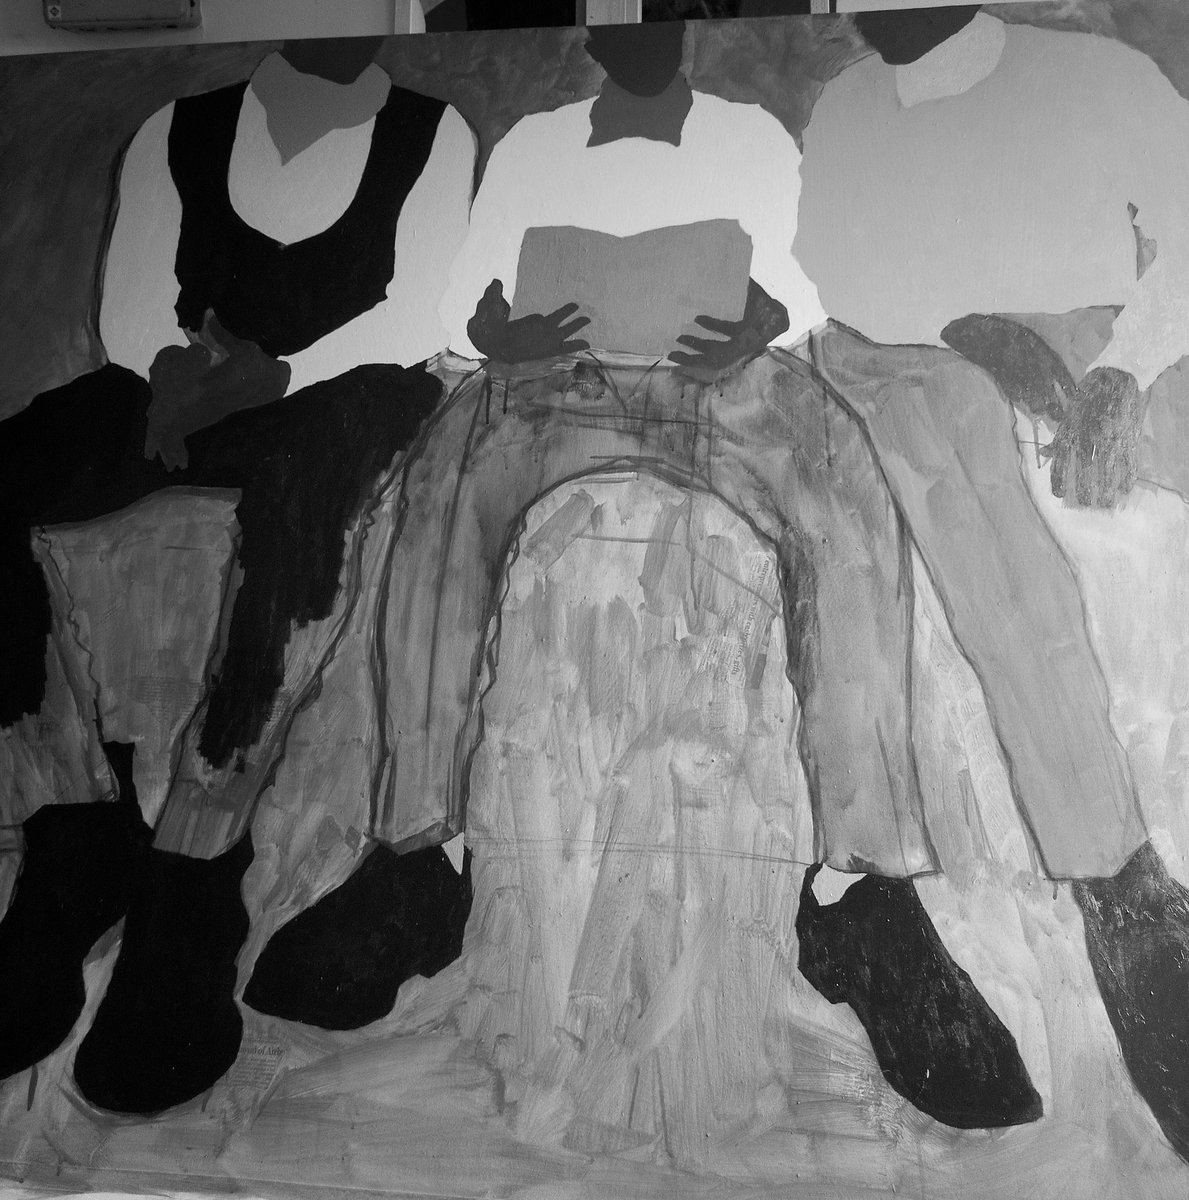 🖤🤍

Work in Progress

#art #artlovers  #yoruba #africanart #Ogunlesipaul #artcollectors  #blackartistcollectors #pink #thebeatles #colours #newyork #red
#contemporaryafricanart  #contemporary #dopeblackart #africanartist #blue  #artsofogunlesipaul #africanartist #life #love